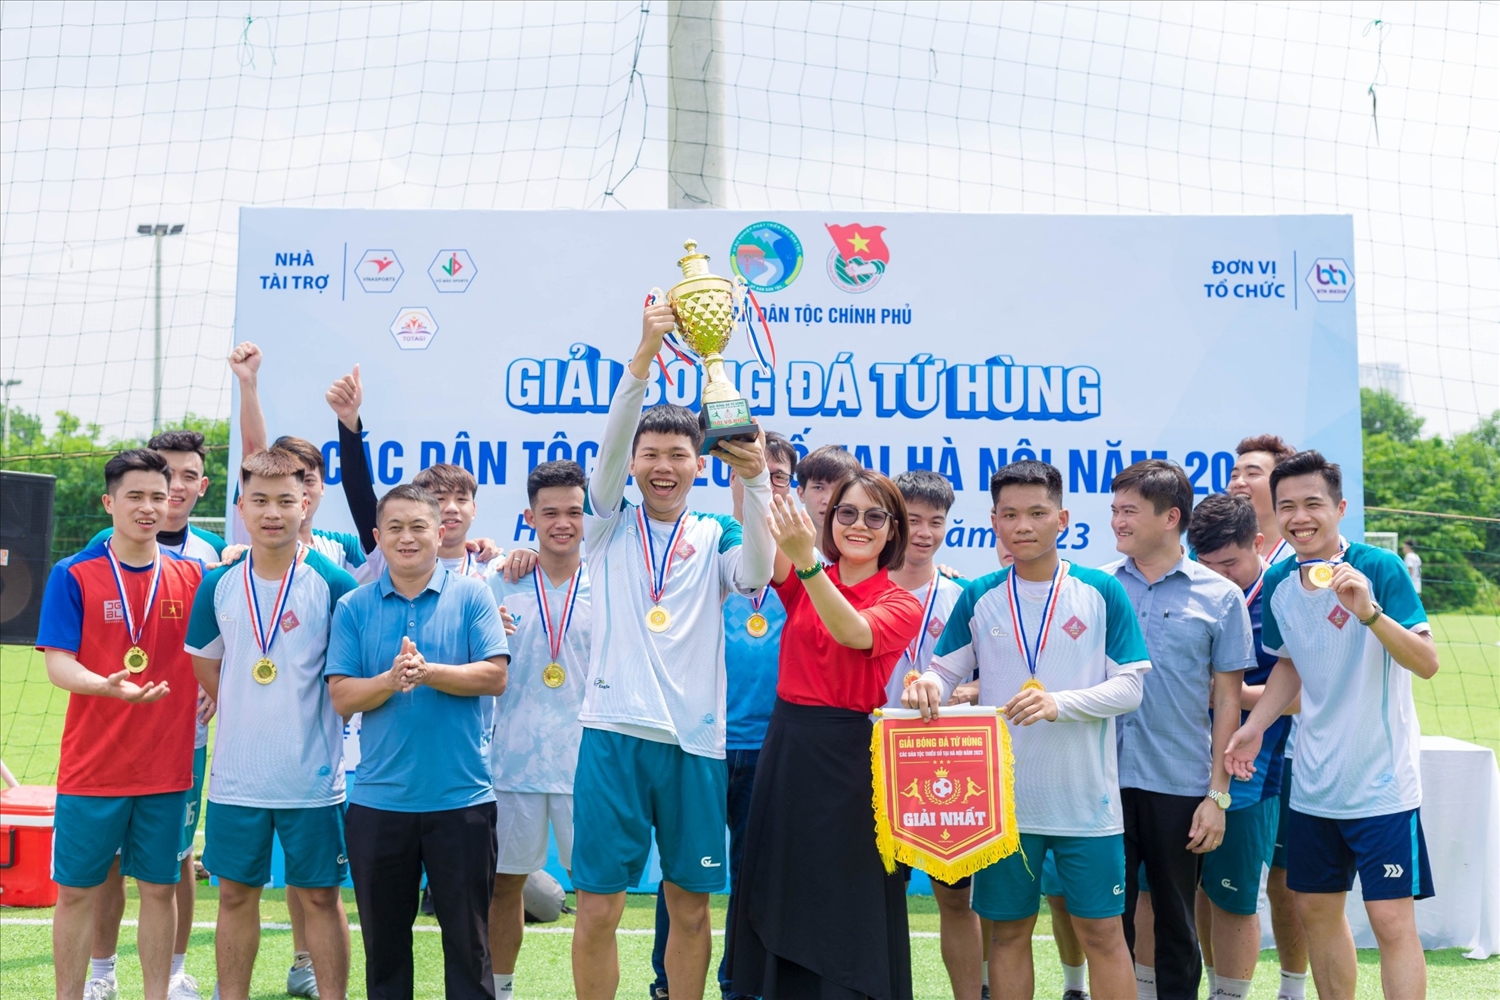 Giải bóng đá các DTTS tại Hà Nội năm 2023 nhằm hướng tới chào mừng Cách mạng tháng Tám và Quốc khánh 2/9, đồng thời nhằm đoàn kết, thúc đẩy các phong trào trong cộng đồng các DTTS tại Hà Nội